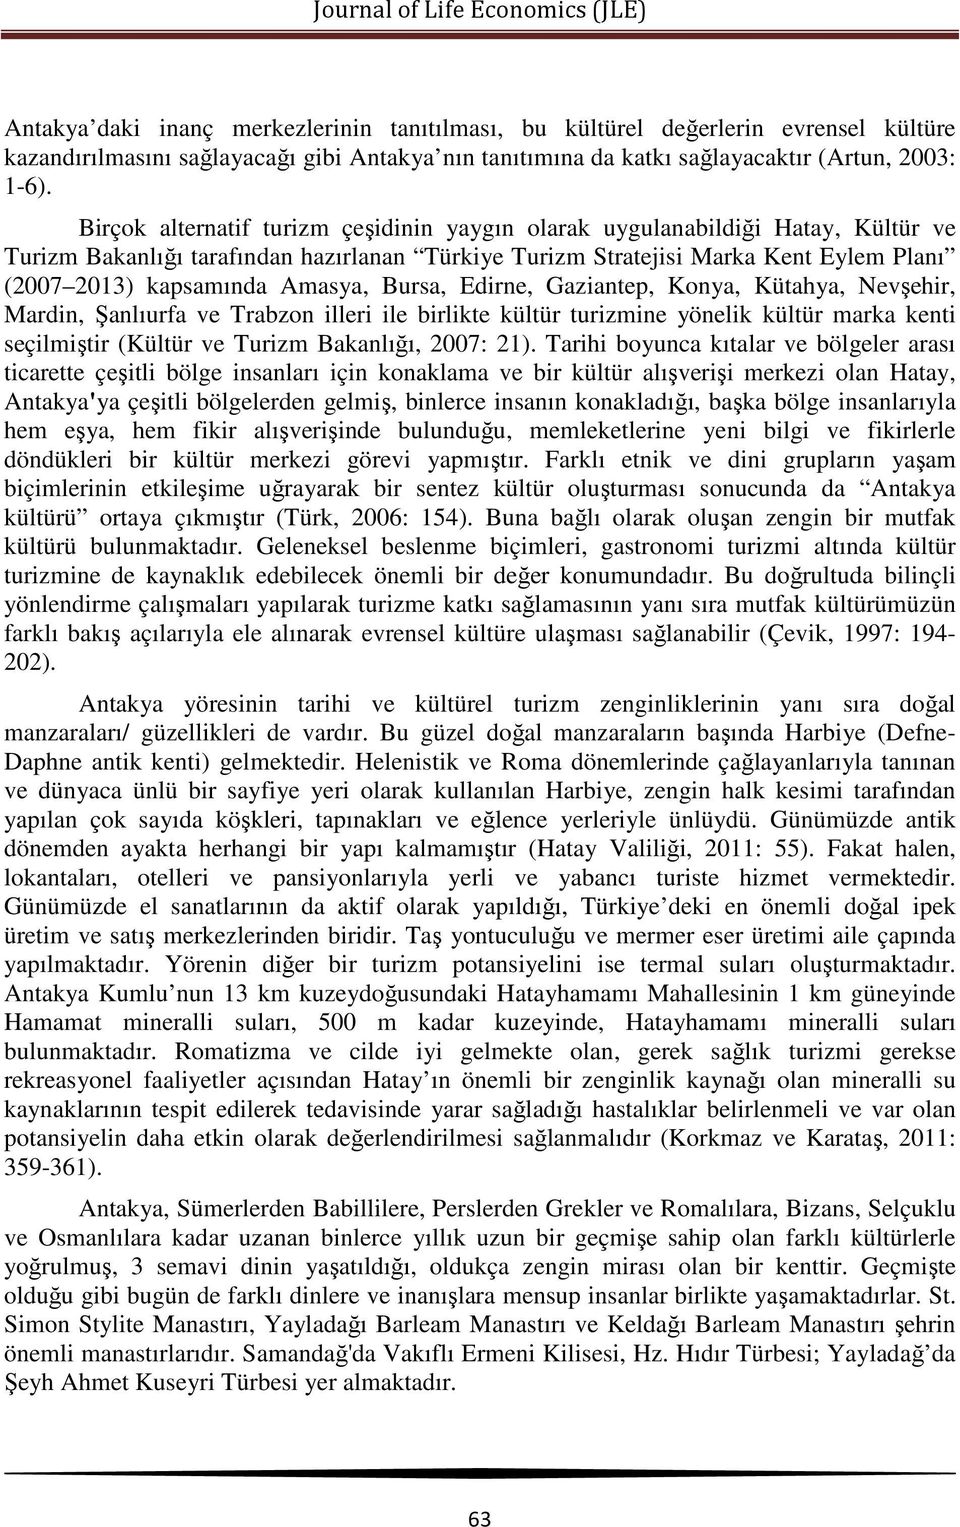 Amasya, Bursa, Edirne, Gaziantep, Konya, Kütahya, Nevşehir, Mardin, Şanlıurfa ve Trabzon illeri ile birlikte kültür turizmine yönelik kültür marka kenti seçilmiştir (Kültür ve Turizm Bakanlığı, 2007: